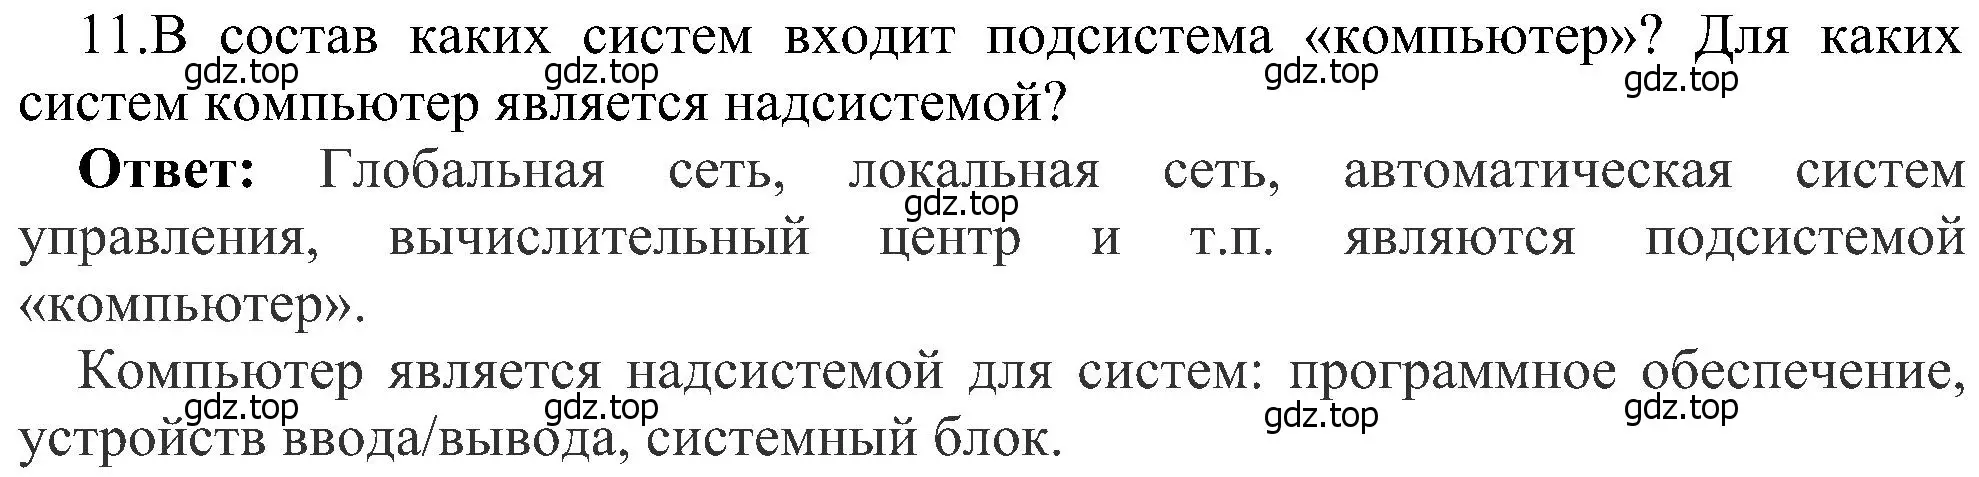 Решение номер 11 (страница 58) гдз по информатике 6 класс Босова, Босова, учебник